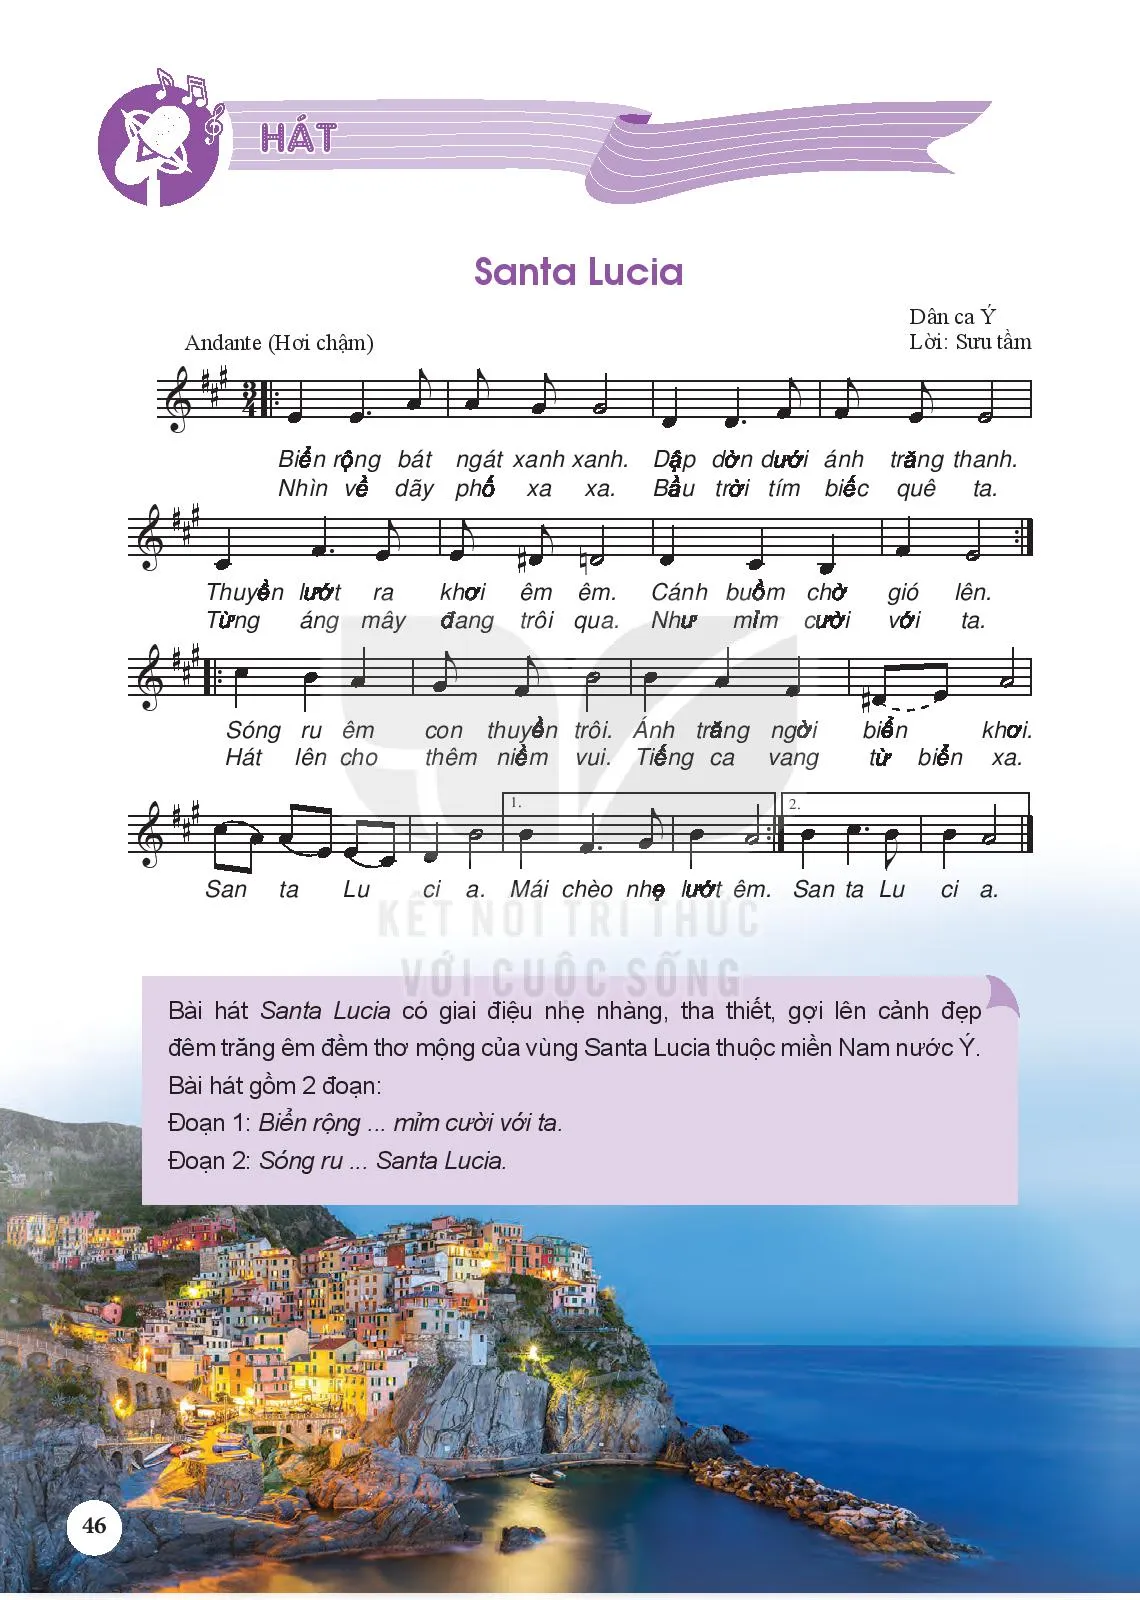 Hát: Bài hát Santa Lucia